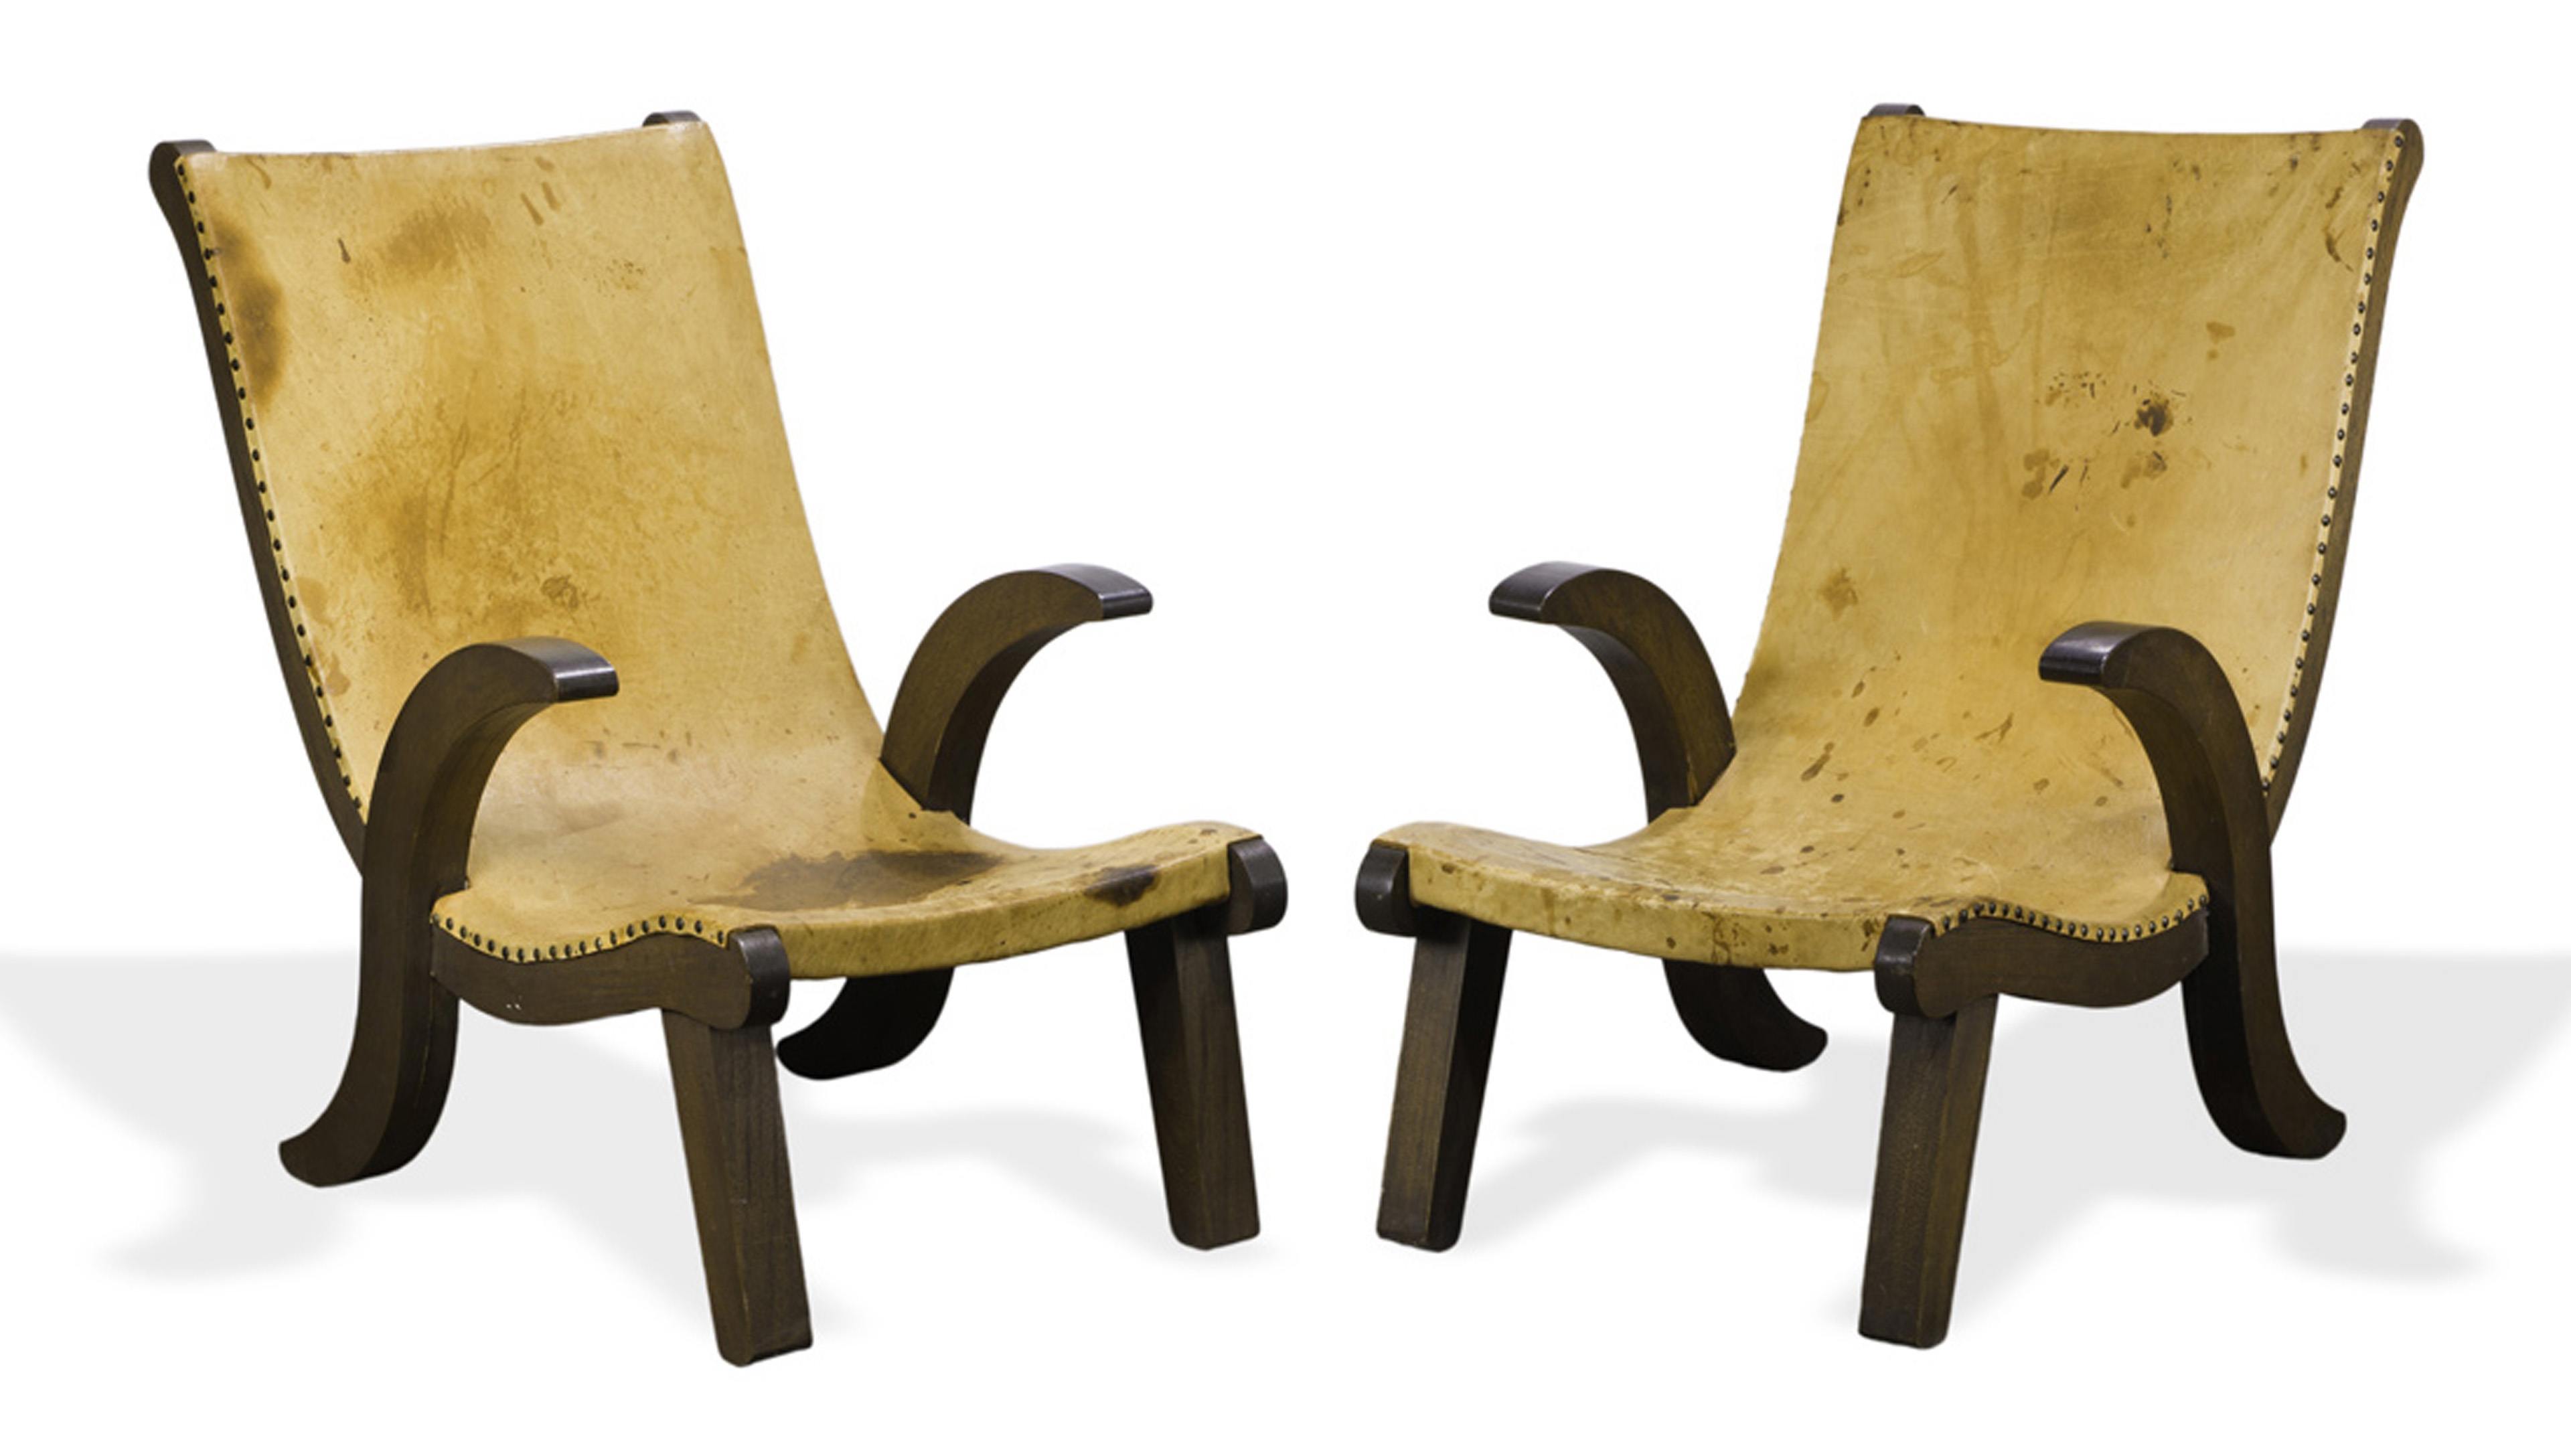 A pair of Clara Porset style Butaque chairs by Clara Porset